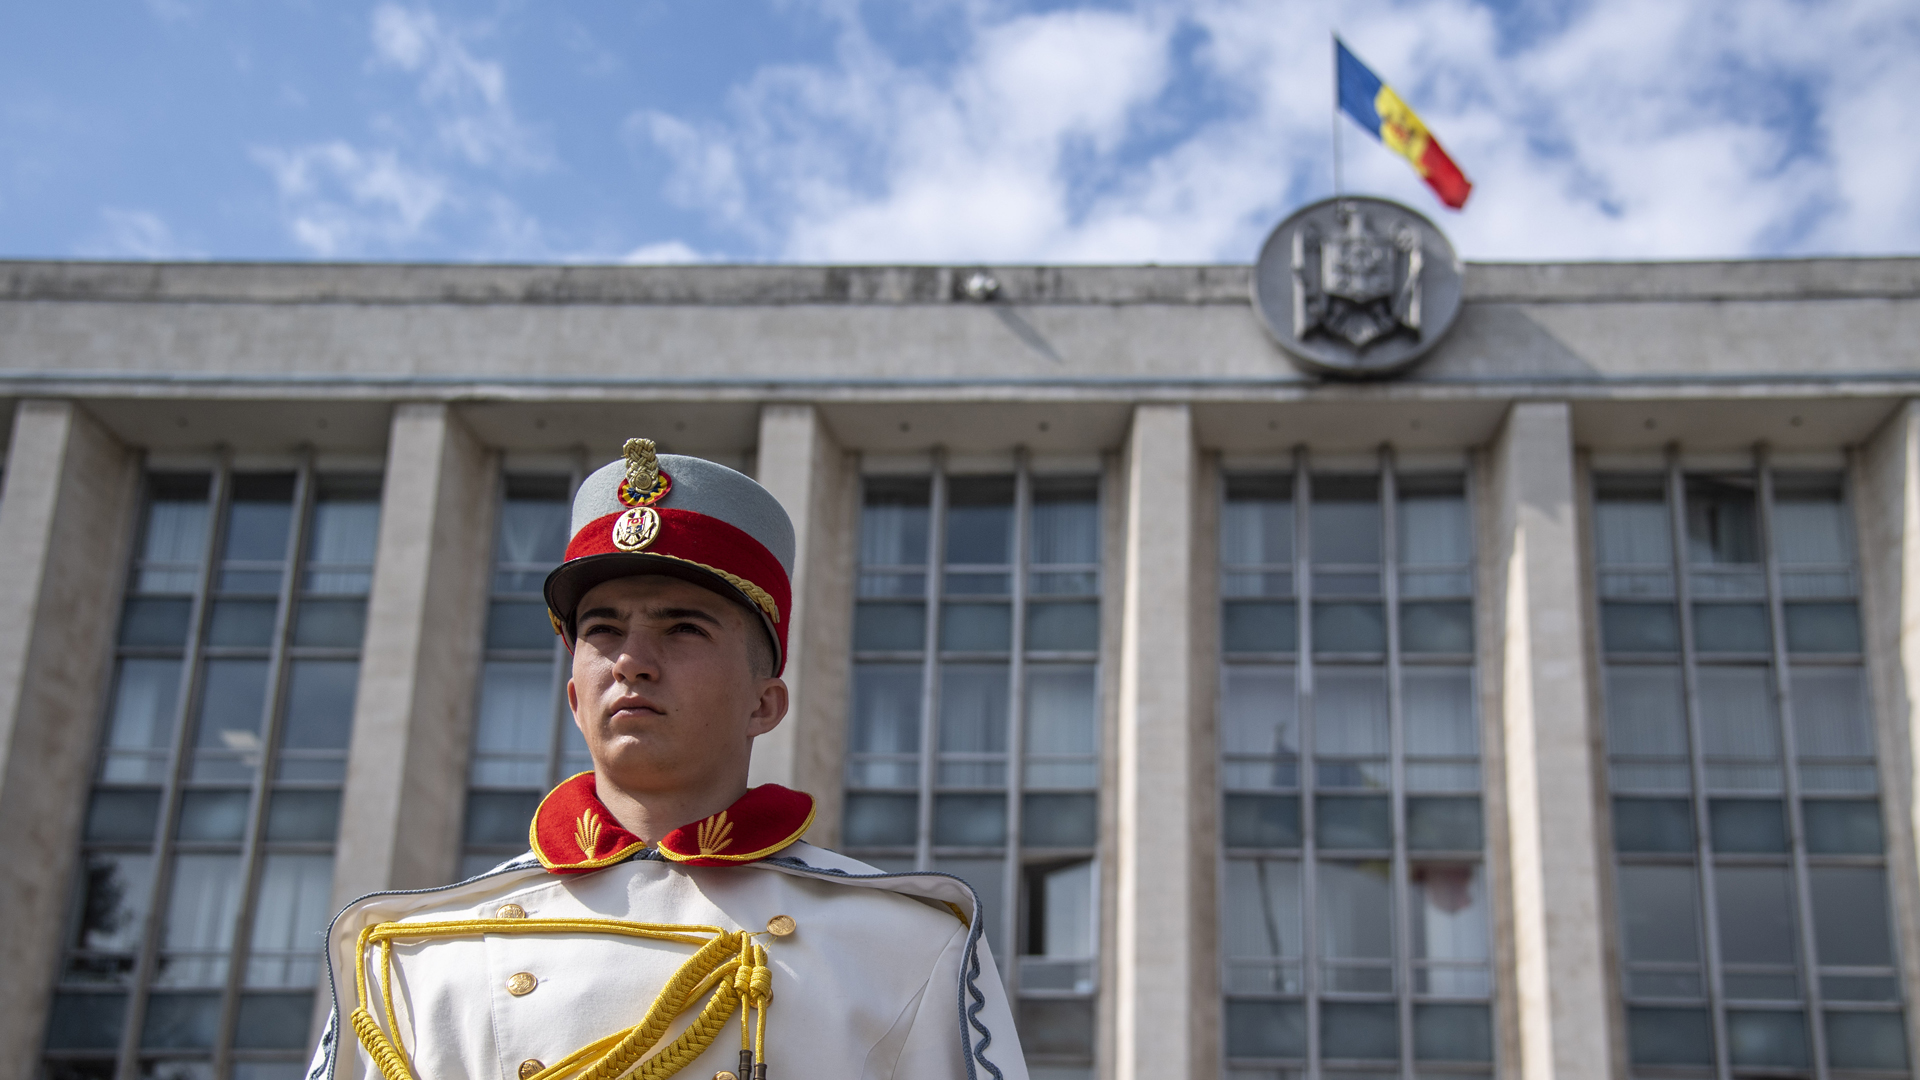 Ehrengardist der Republik Moldau vor dem Regierungspalast. | picture alliance / Photoshot